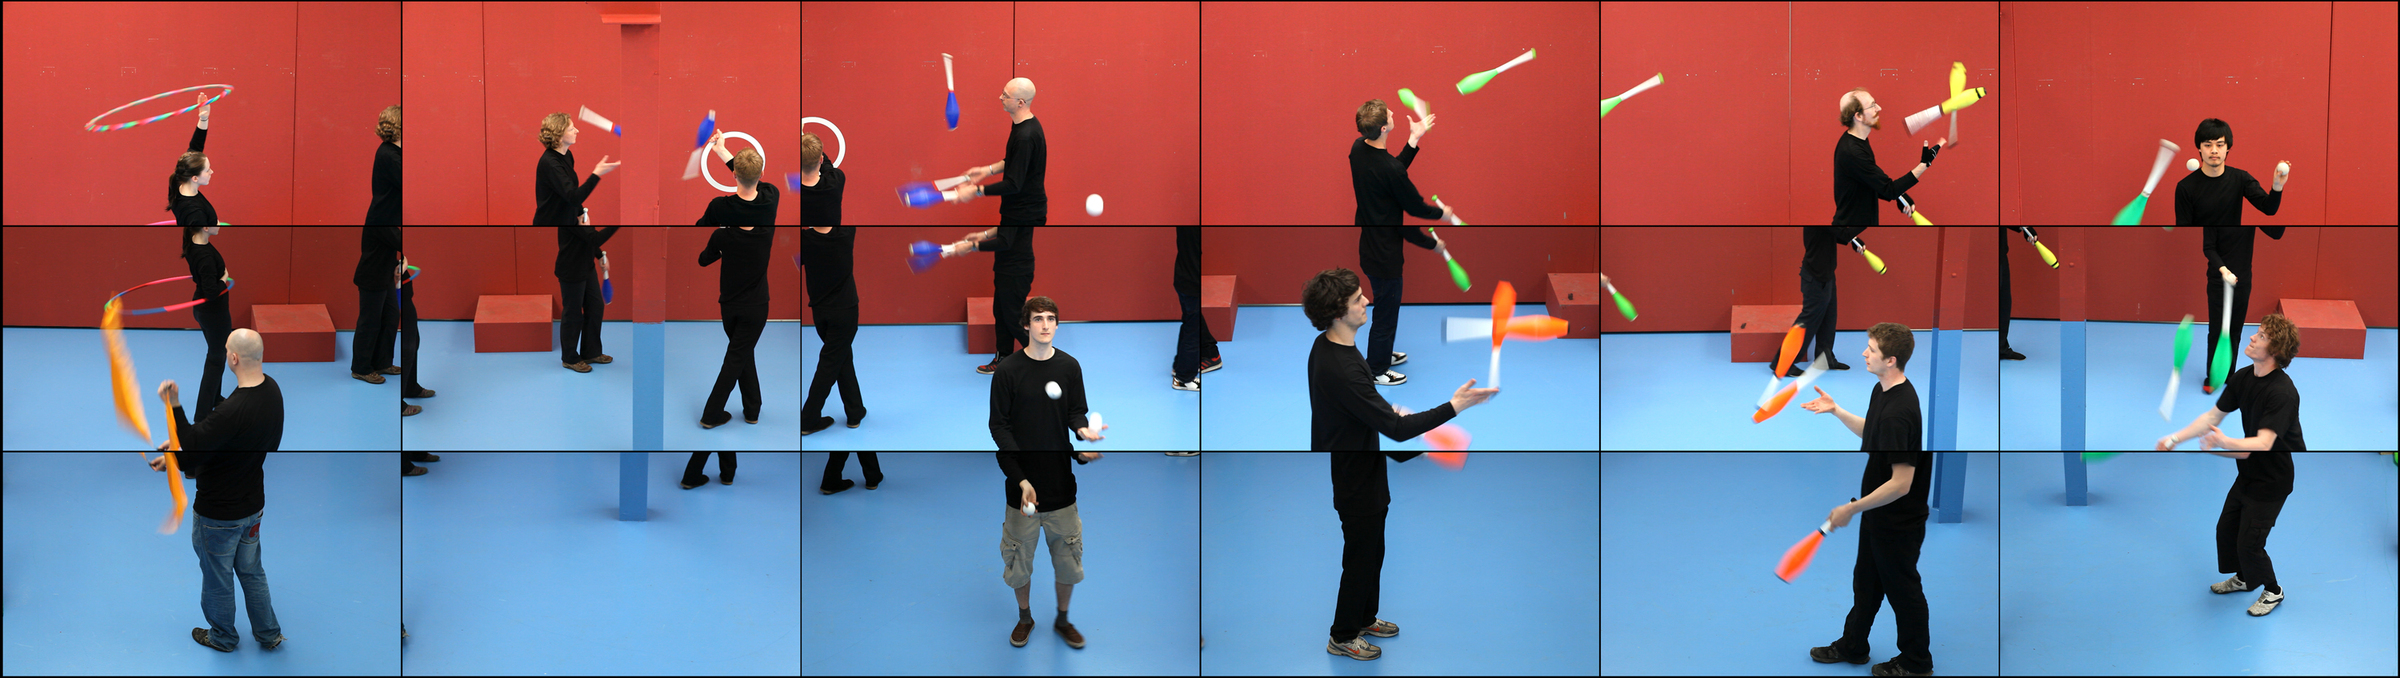 David Hockney, still from The Jugglers, June 24th 2012, 2012. Eighteen-screen video installation, 9 min..jpg